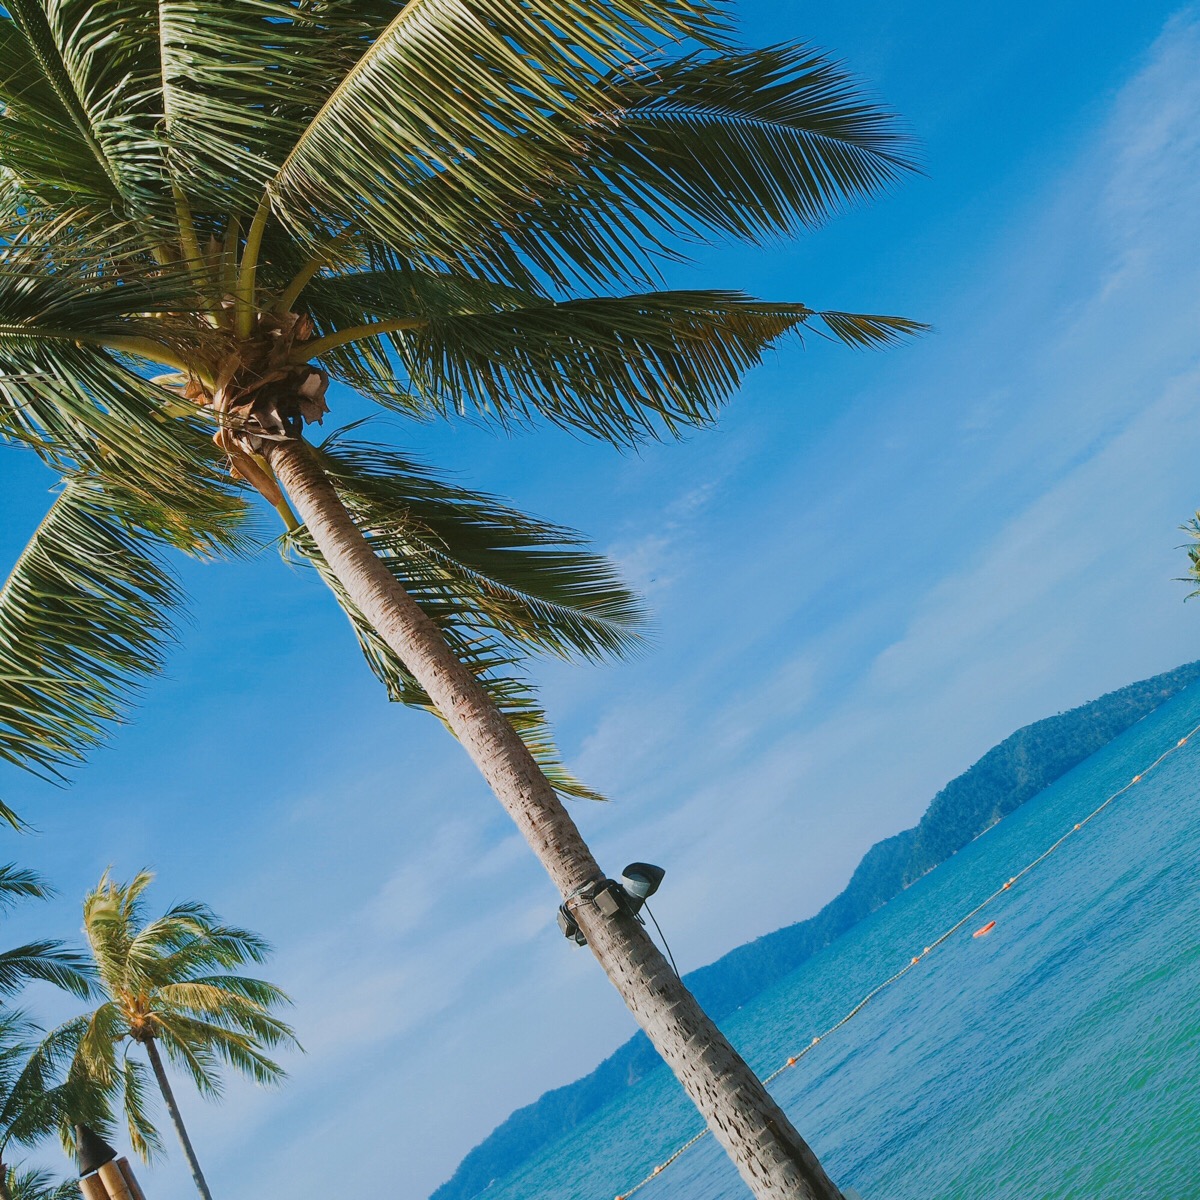 海边椰子树风景头像图片